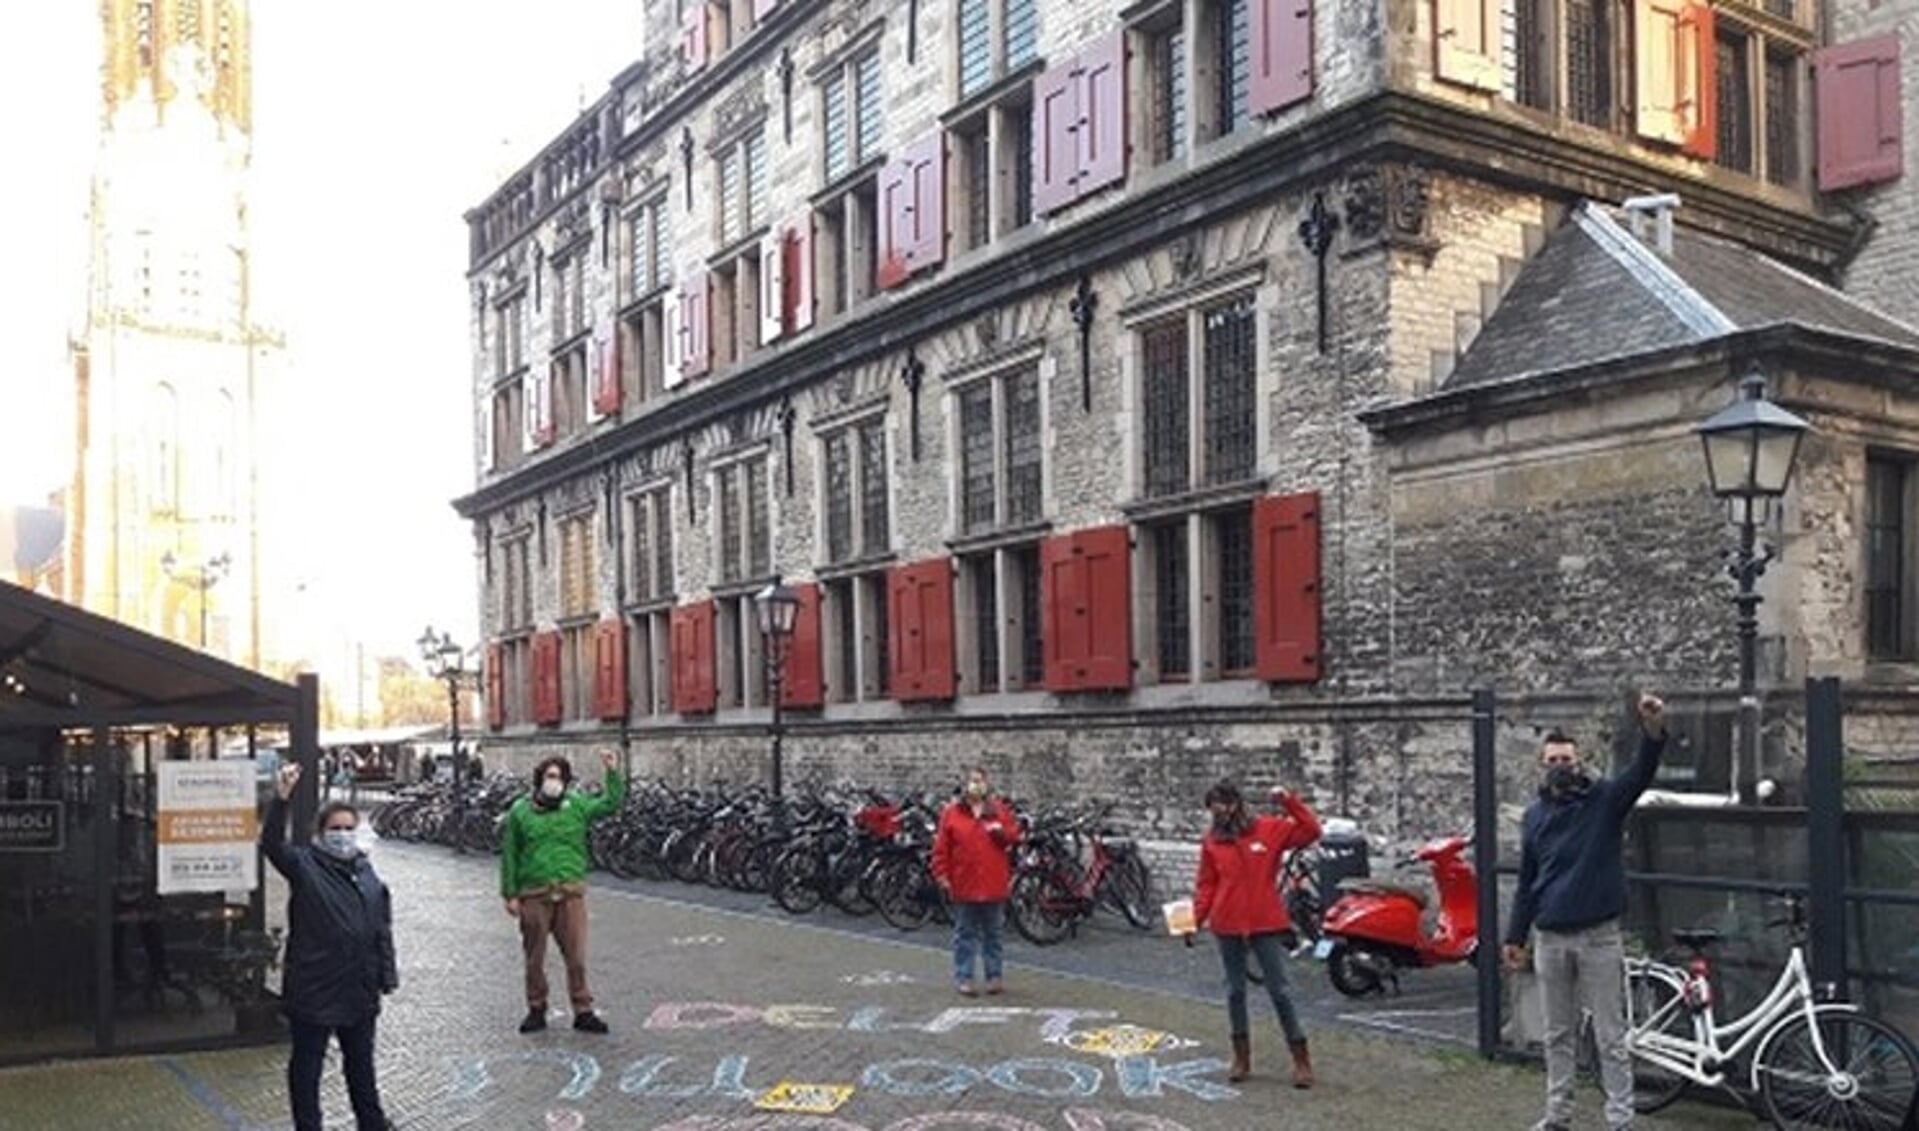 Ook in Haarlem komen actievoerders zaterdag samen.